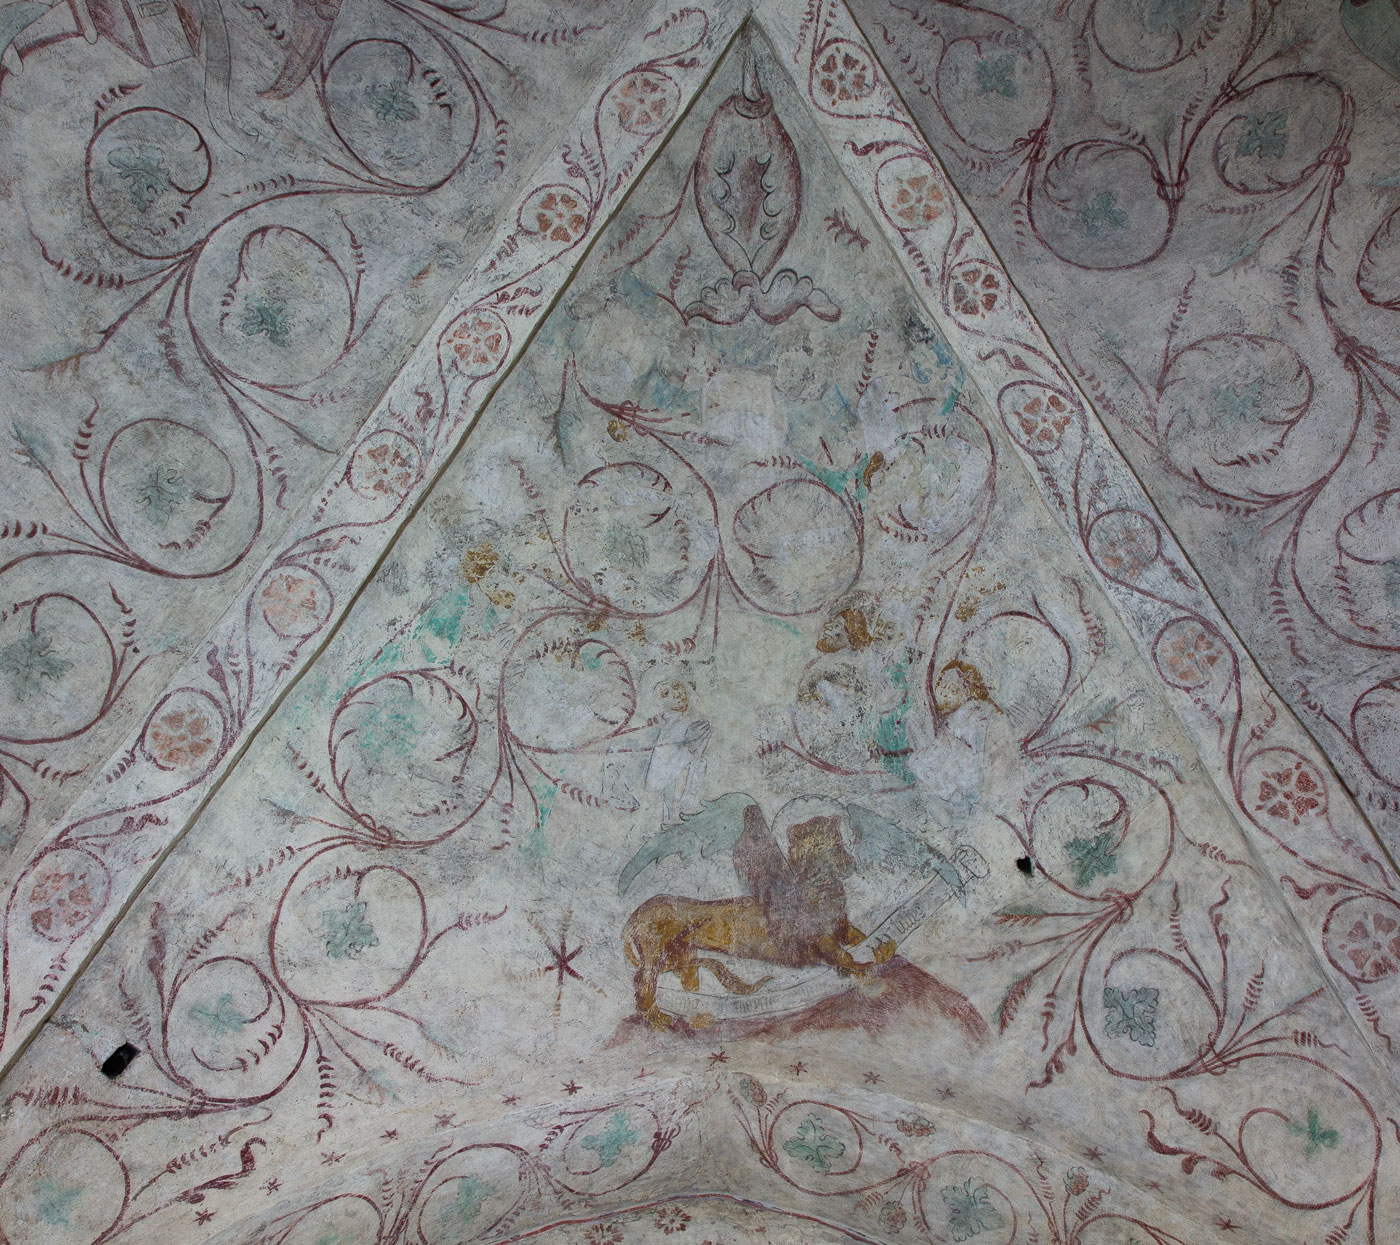 Kristi himmelsfärd (fragment i ett målningslager från 1400-talets mitt) - Håbo-Tibble kyrka